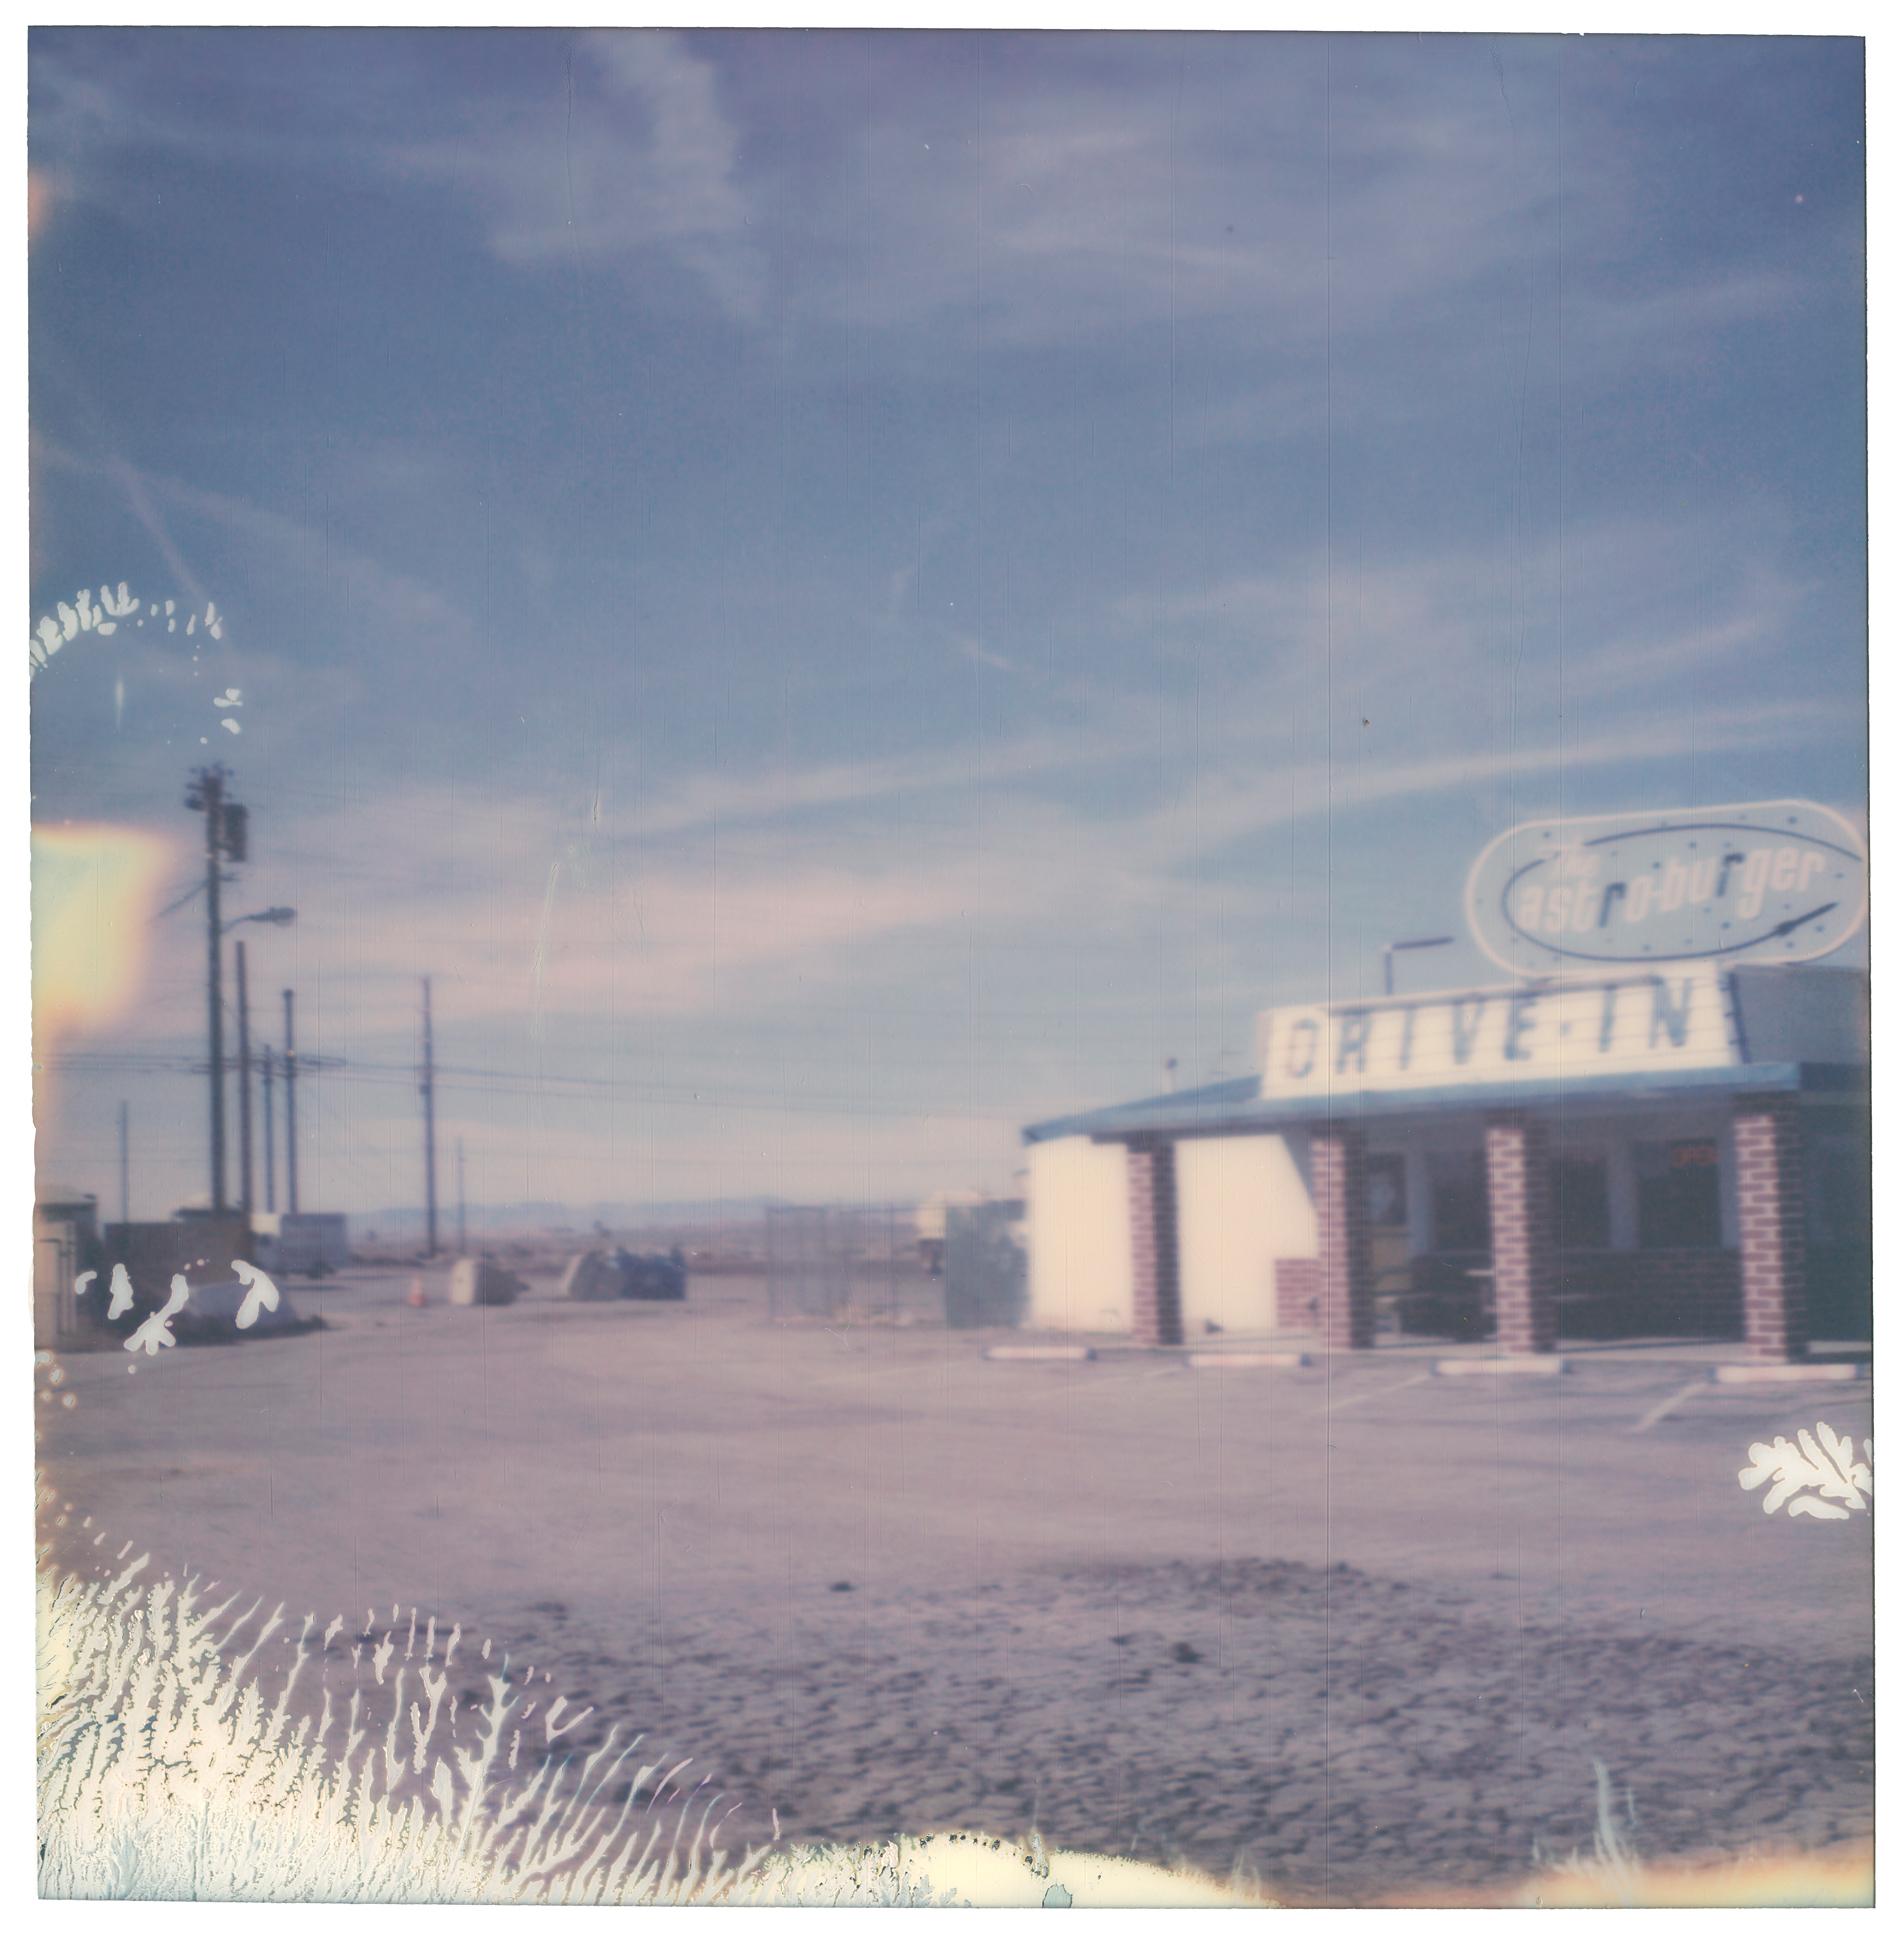 Drive-In (American Depression) - Contemporary, Polaroid, Landscape